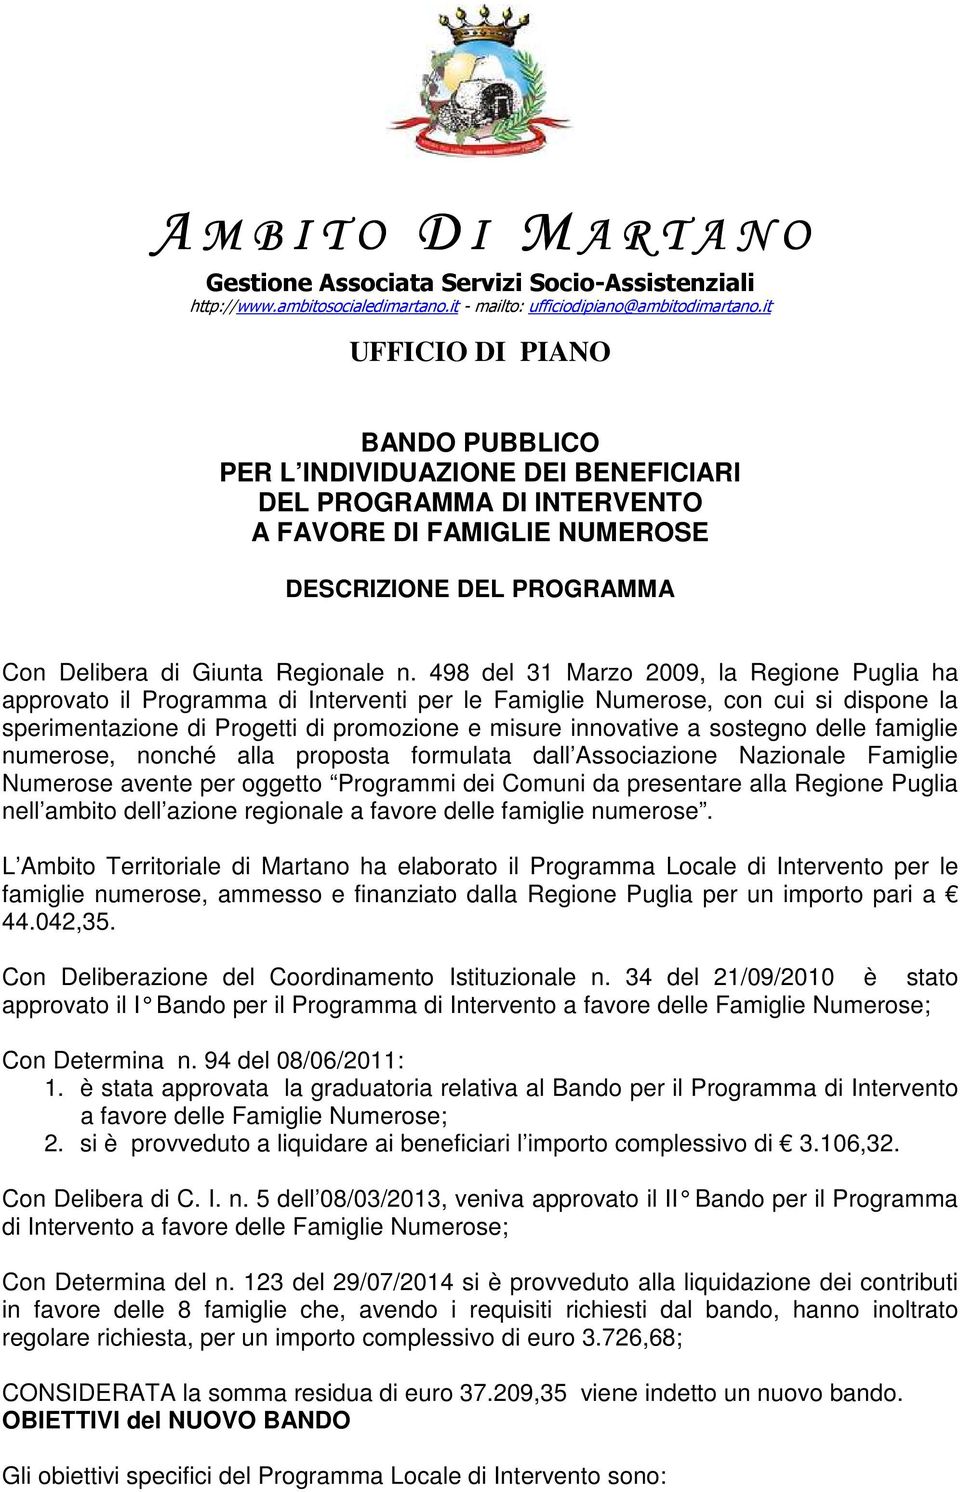 498 del 31 Marzo 2009, la Regione Puglia ha approvato il Programma di Interventi per le Famiglie Numerose, con cui si dispone la sperimentazione di Progetti di promozione e misure innovative a